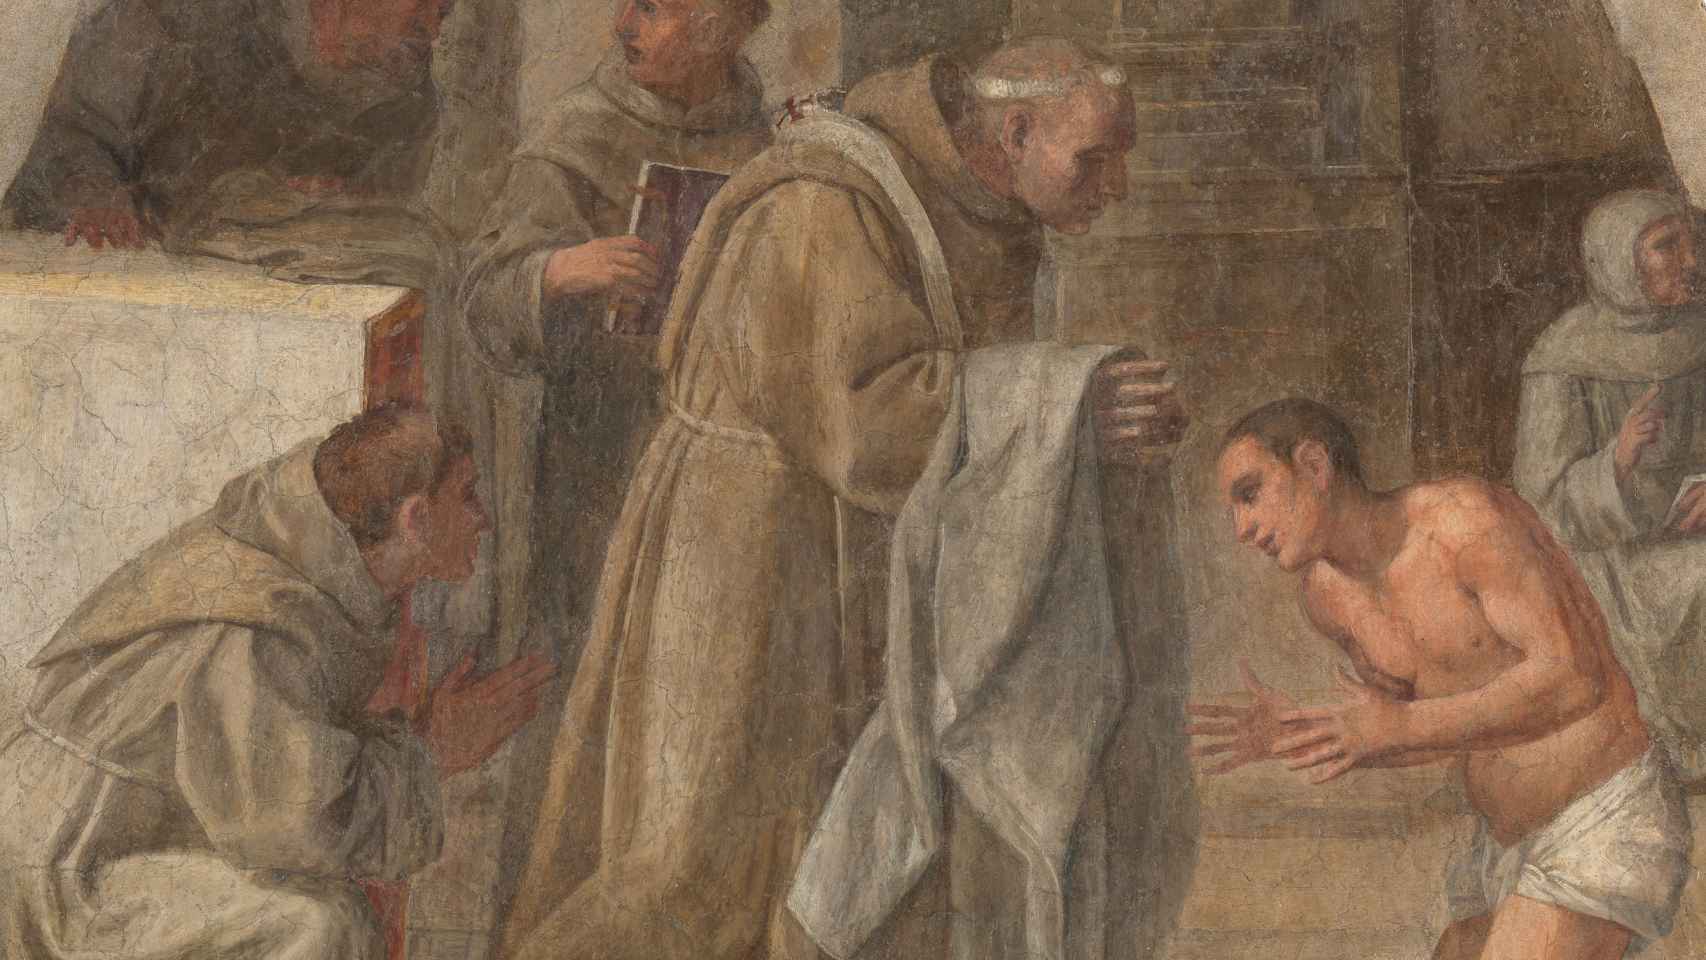 Detalle de 'San Diego de Alcalá recibe el hábito franciscano', 1604-1605